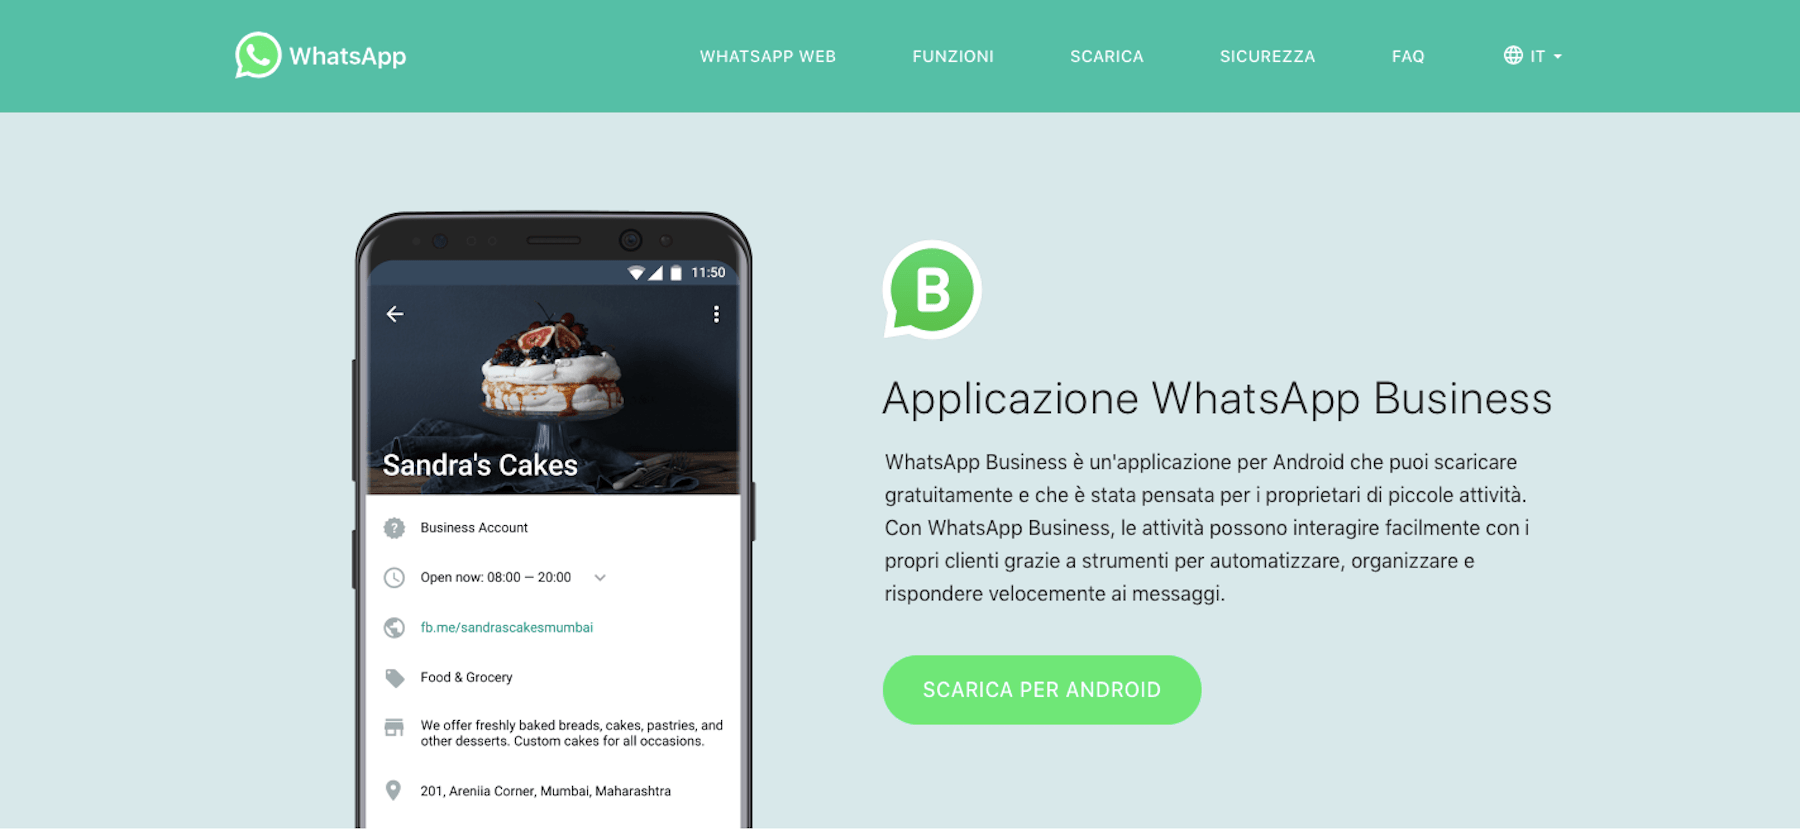 WhatsApp Business è arrivato in Italia: ecco come funziona